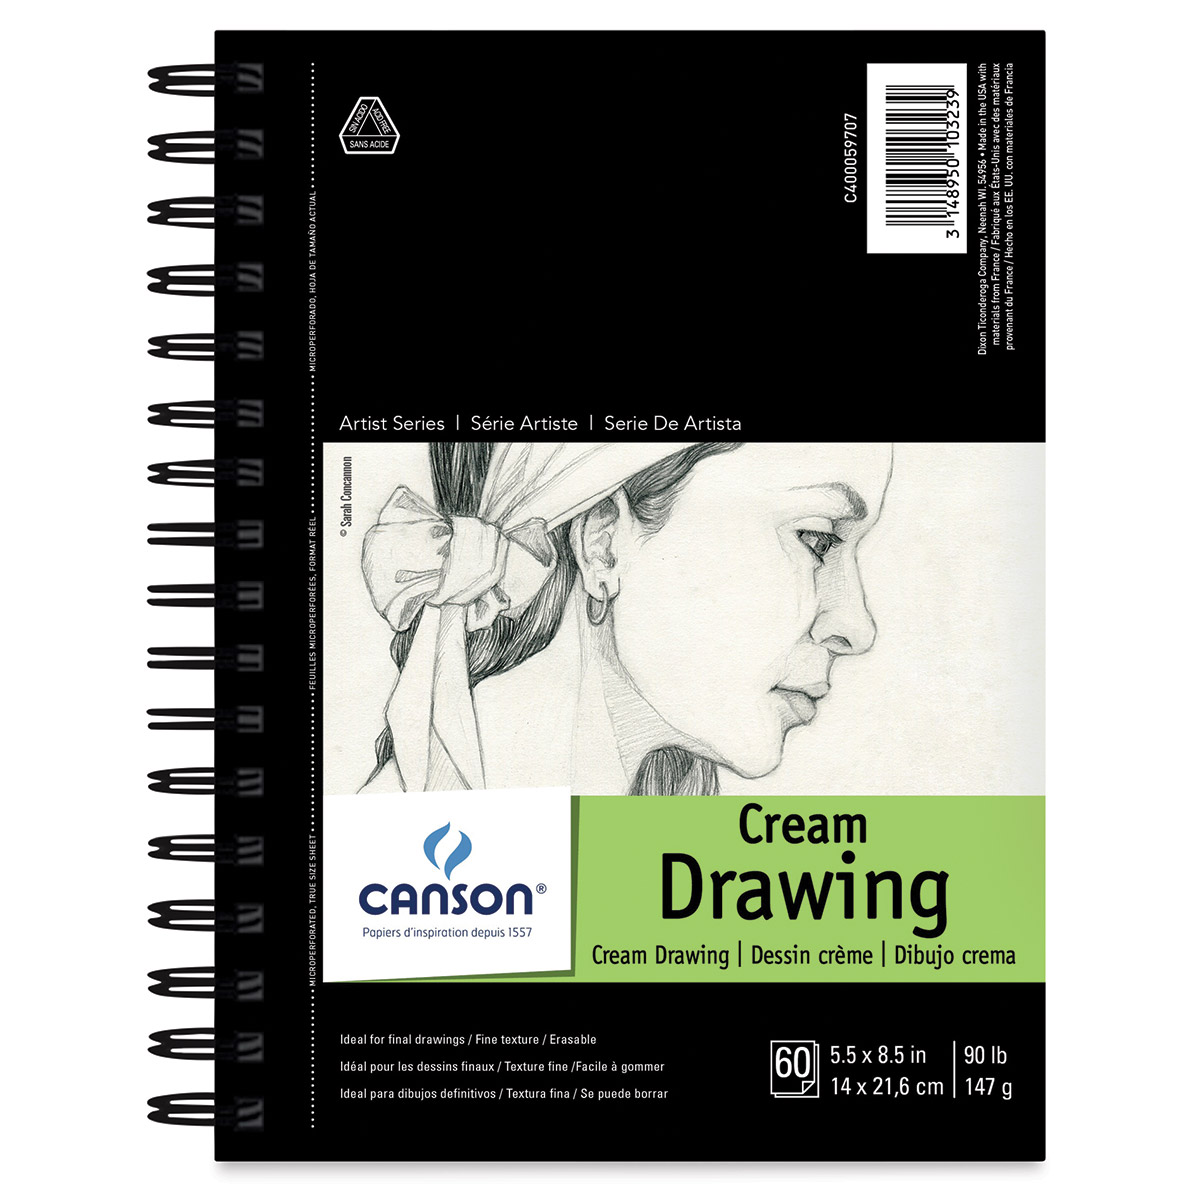 Canson Universal Hardbound Sketchbook